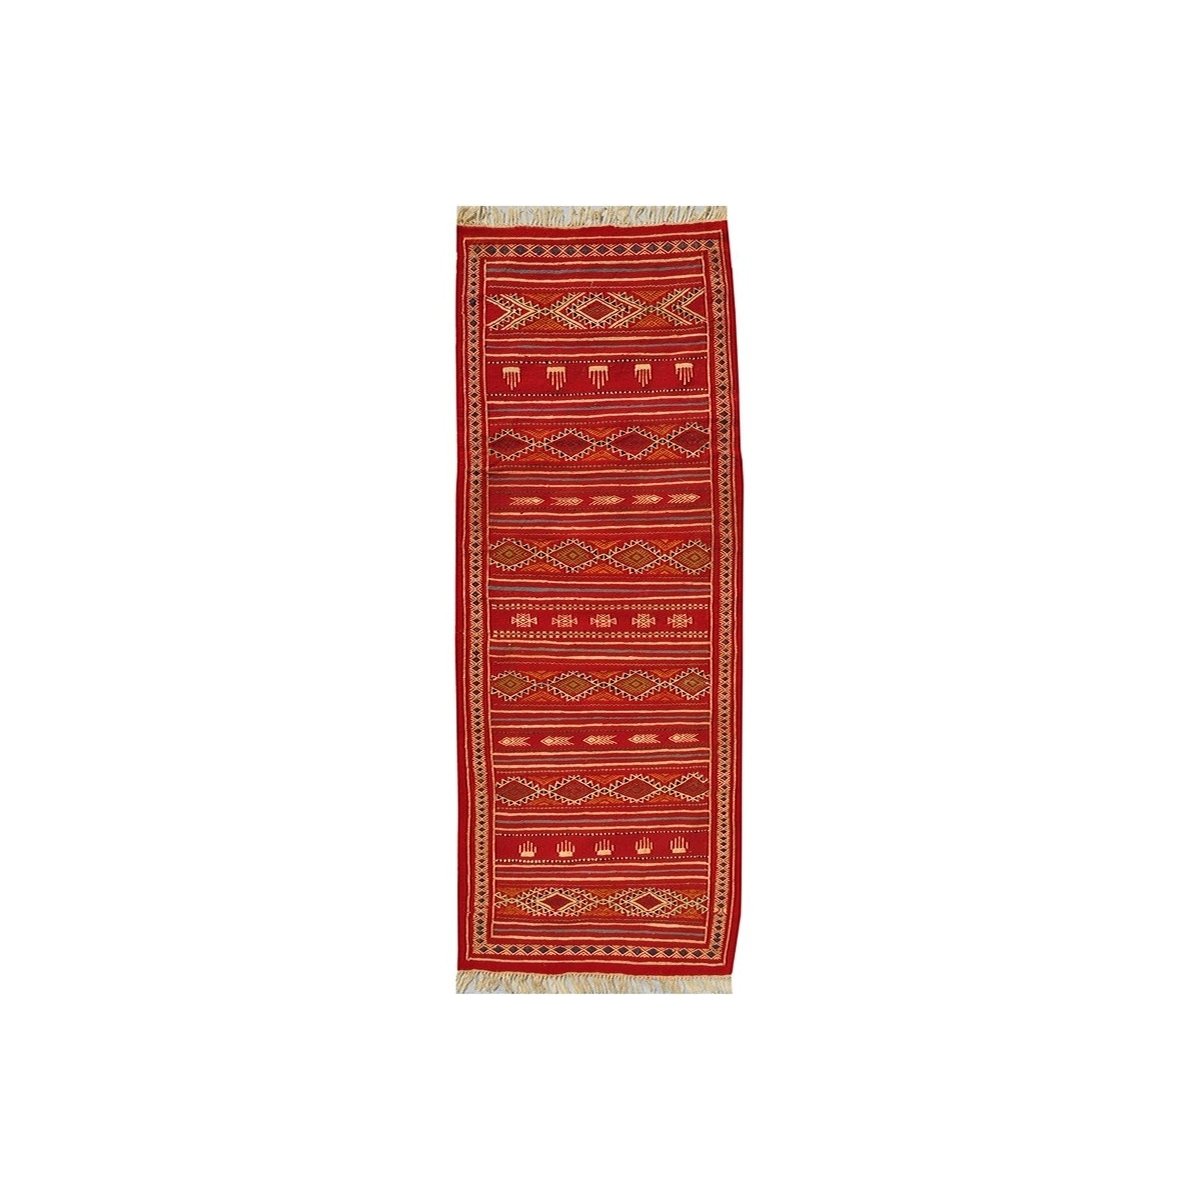 Tapete berbere Tapete Kilim longo Midoun 75x205 Multicor (Tecidos à mão, Lã) Tapete tunisiano kilim, estilo marroquino. Tapete r